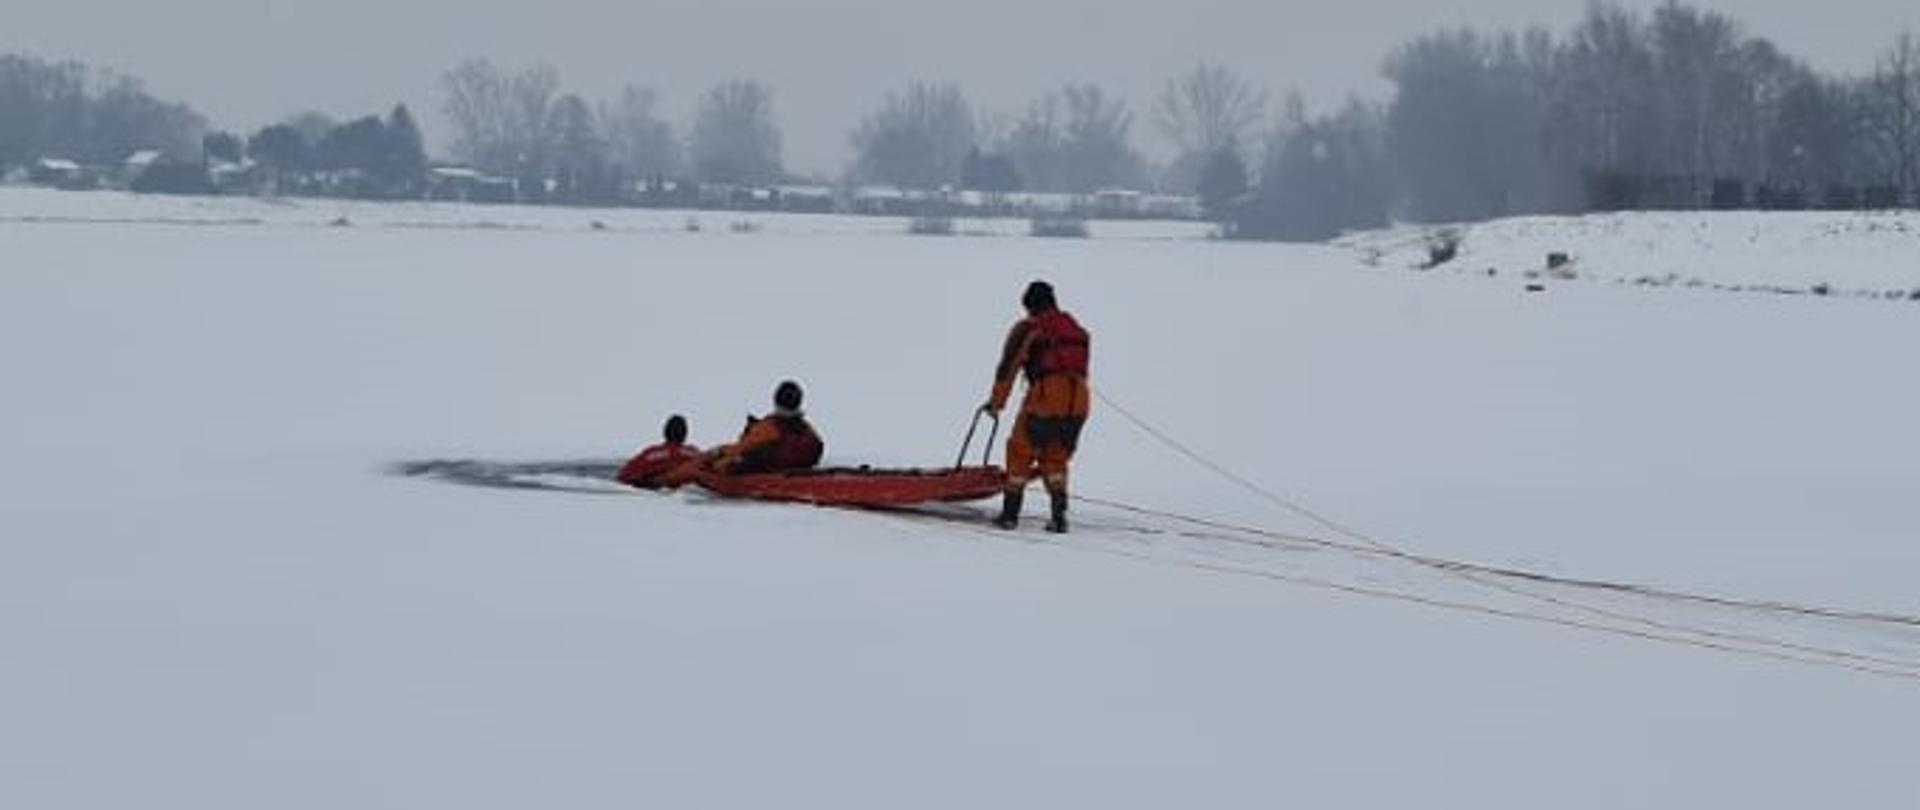 Trzech strażaków na lodzie z saniami do ratowania ludzi. Ćwiczenia z zakresu ratownictwa lodowego. 